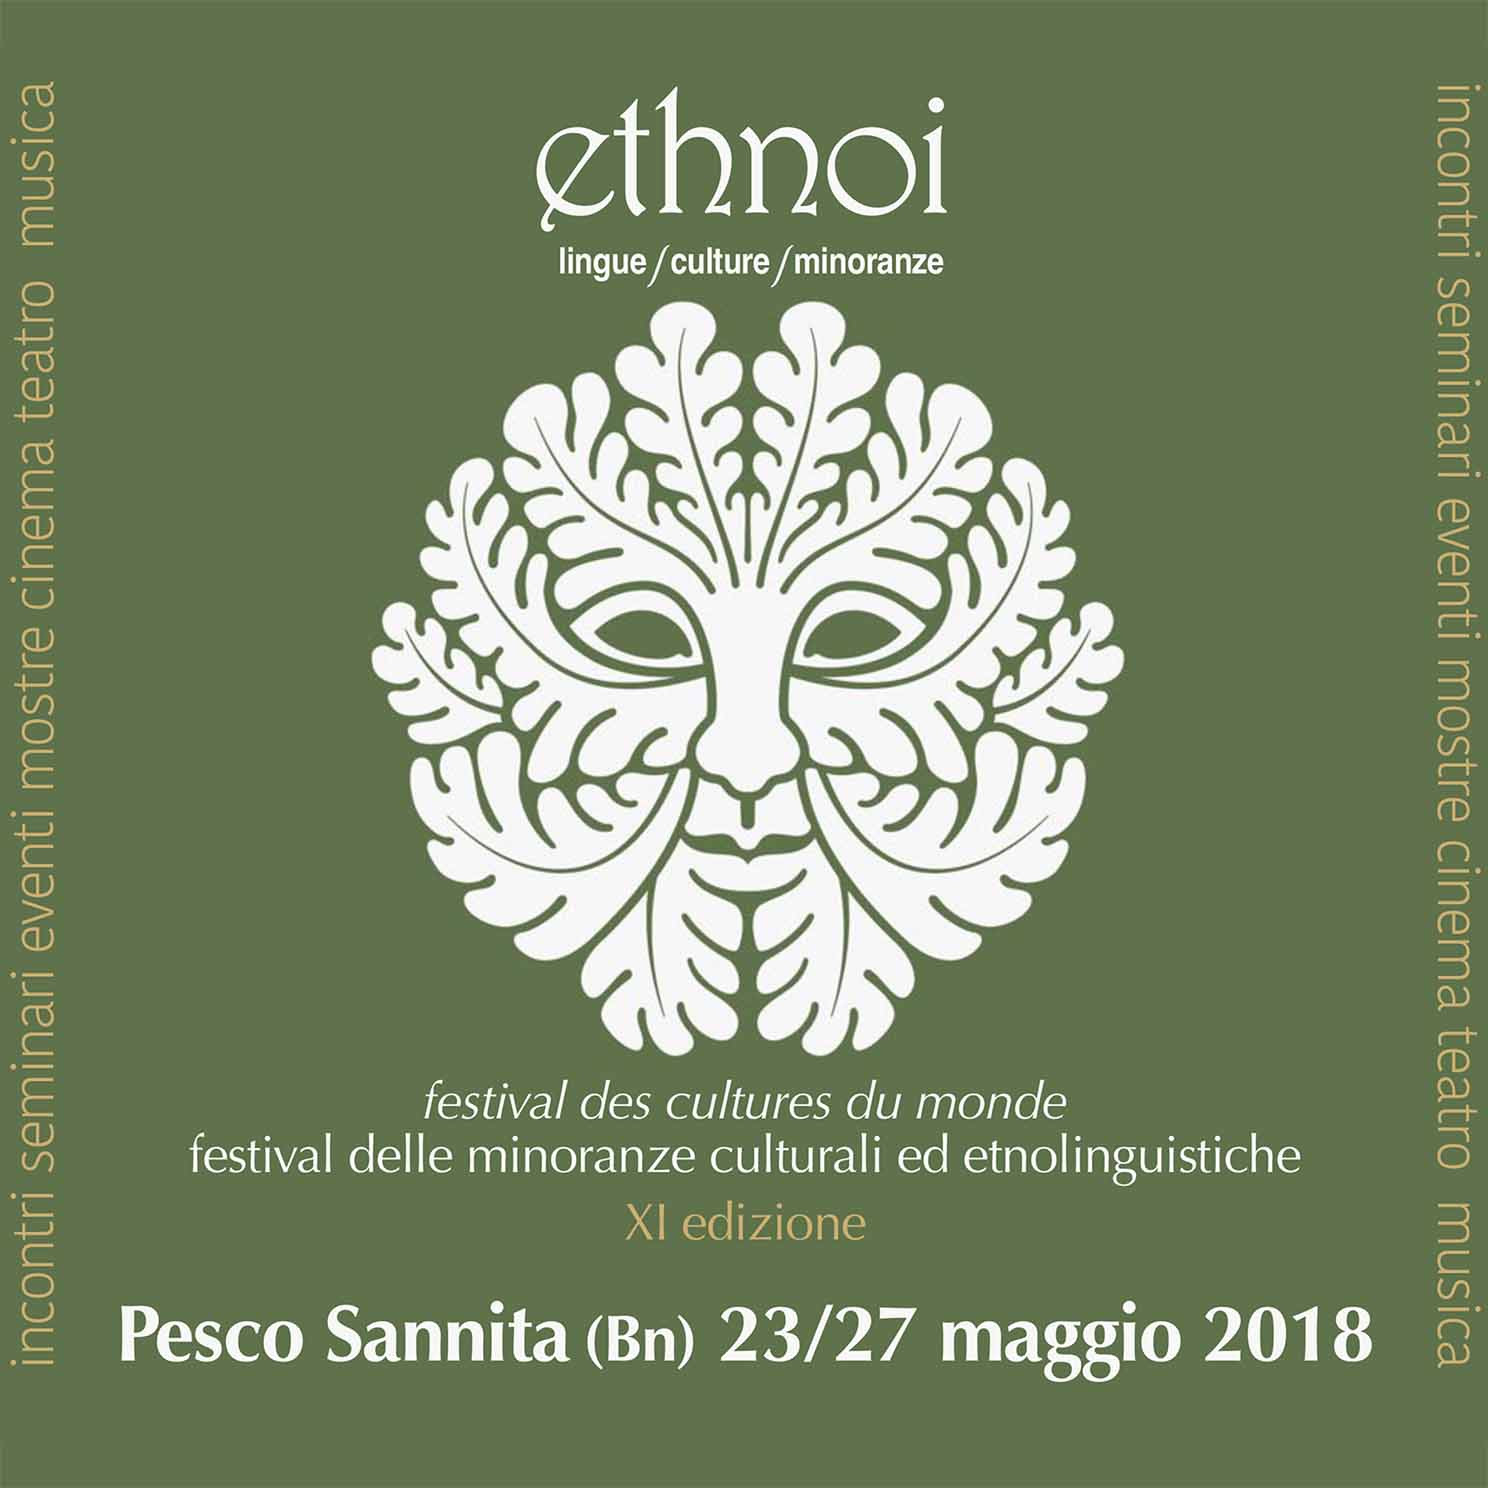  Pesco Sannita,  XI edizione del Festival delle minoranze culturali ed etnolinguistiche